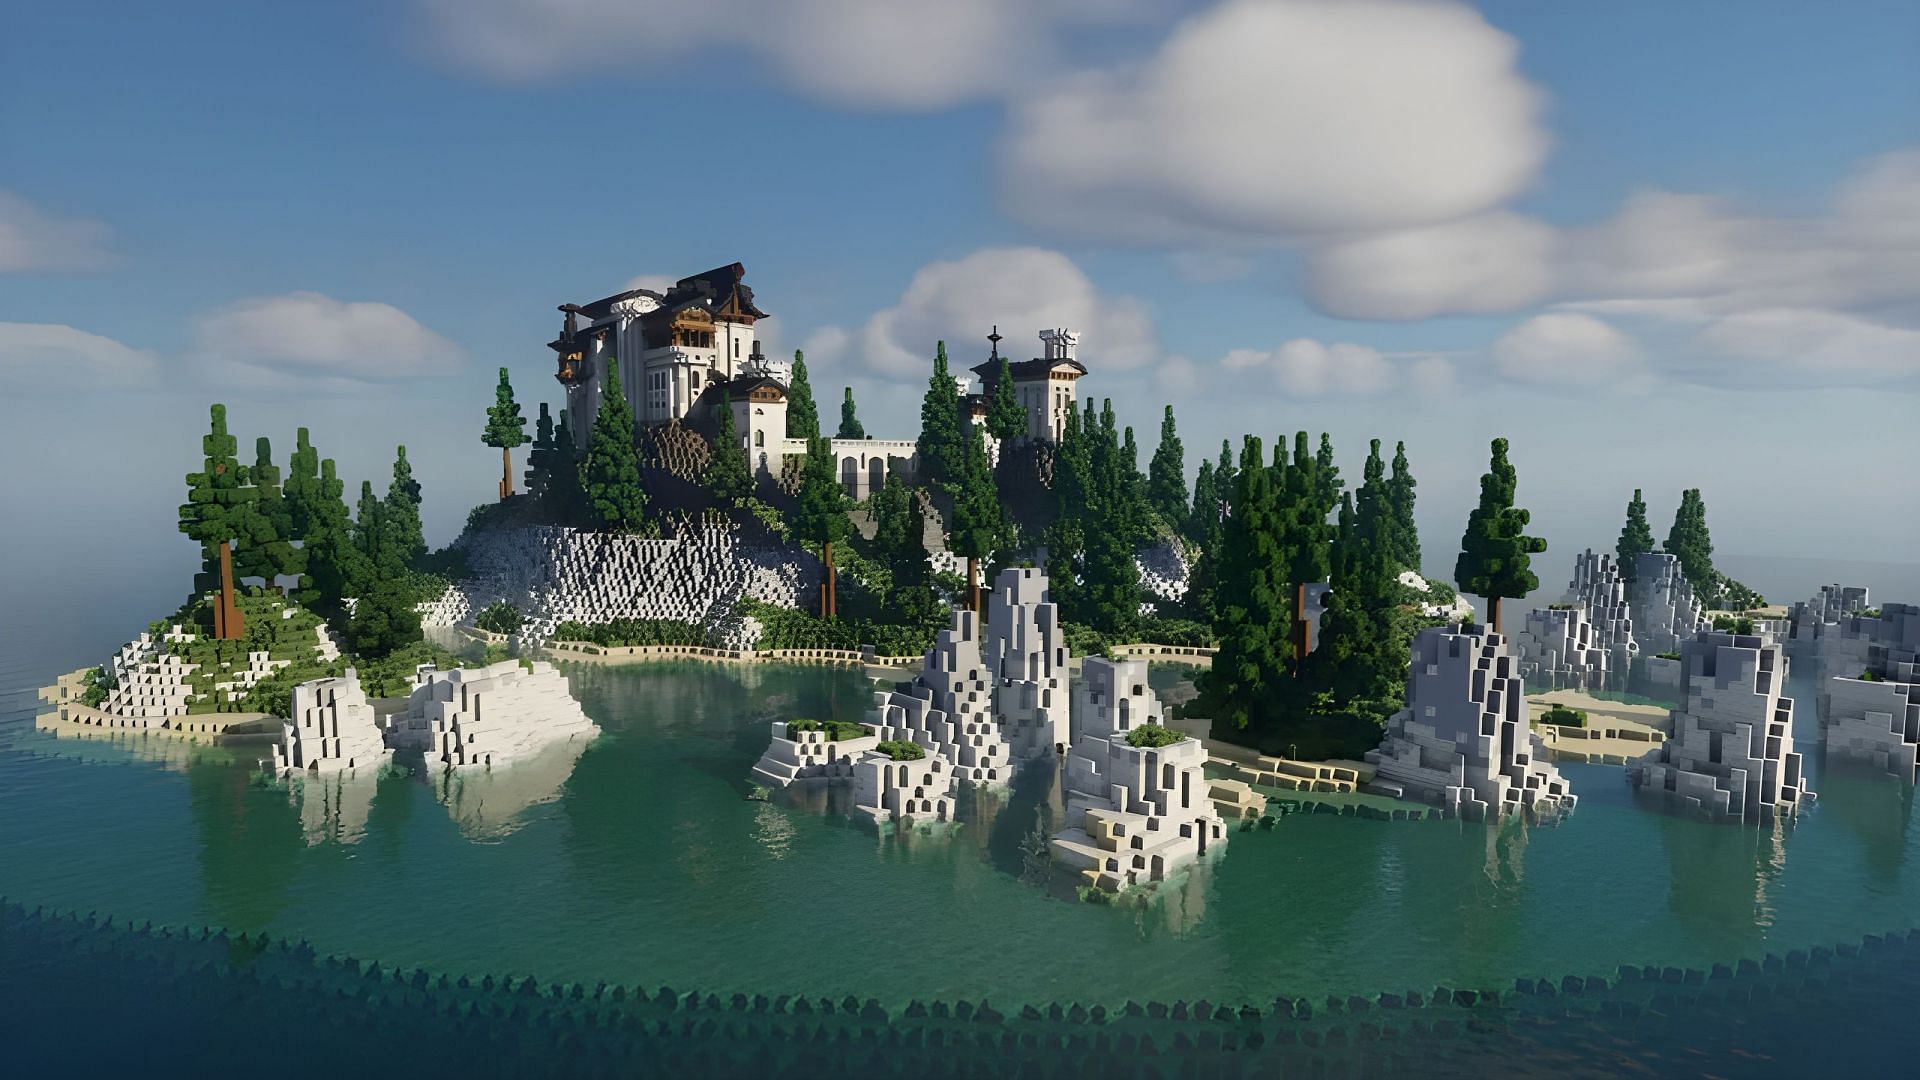 The Medard Estate Minecraft world (Image via planetminecraft.com)